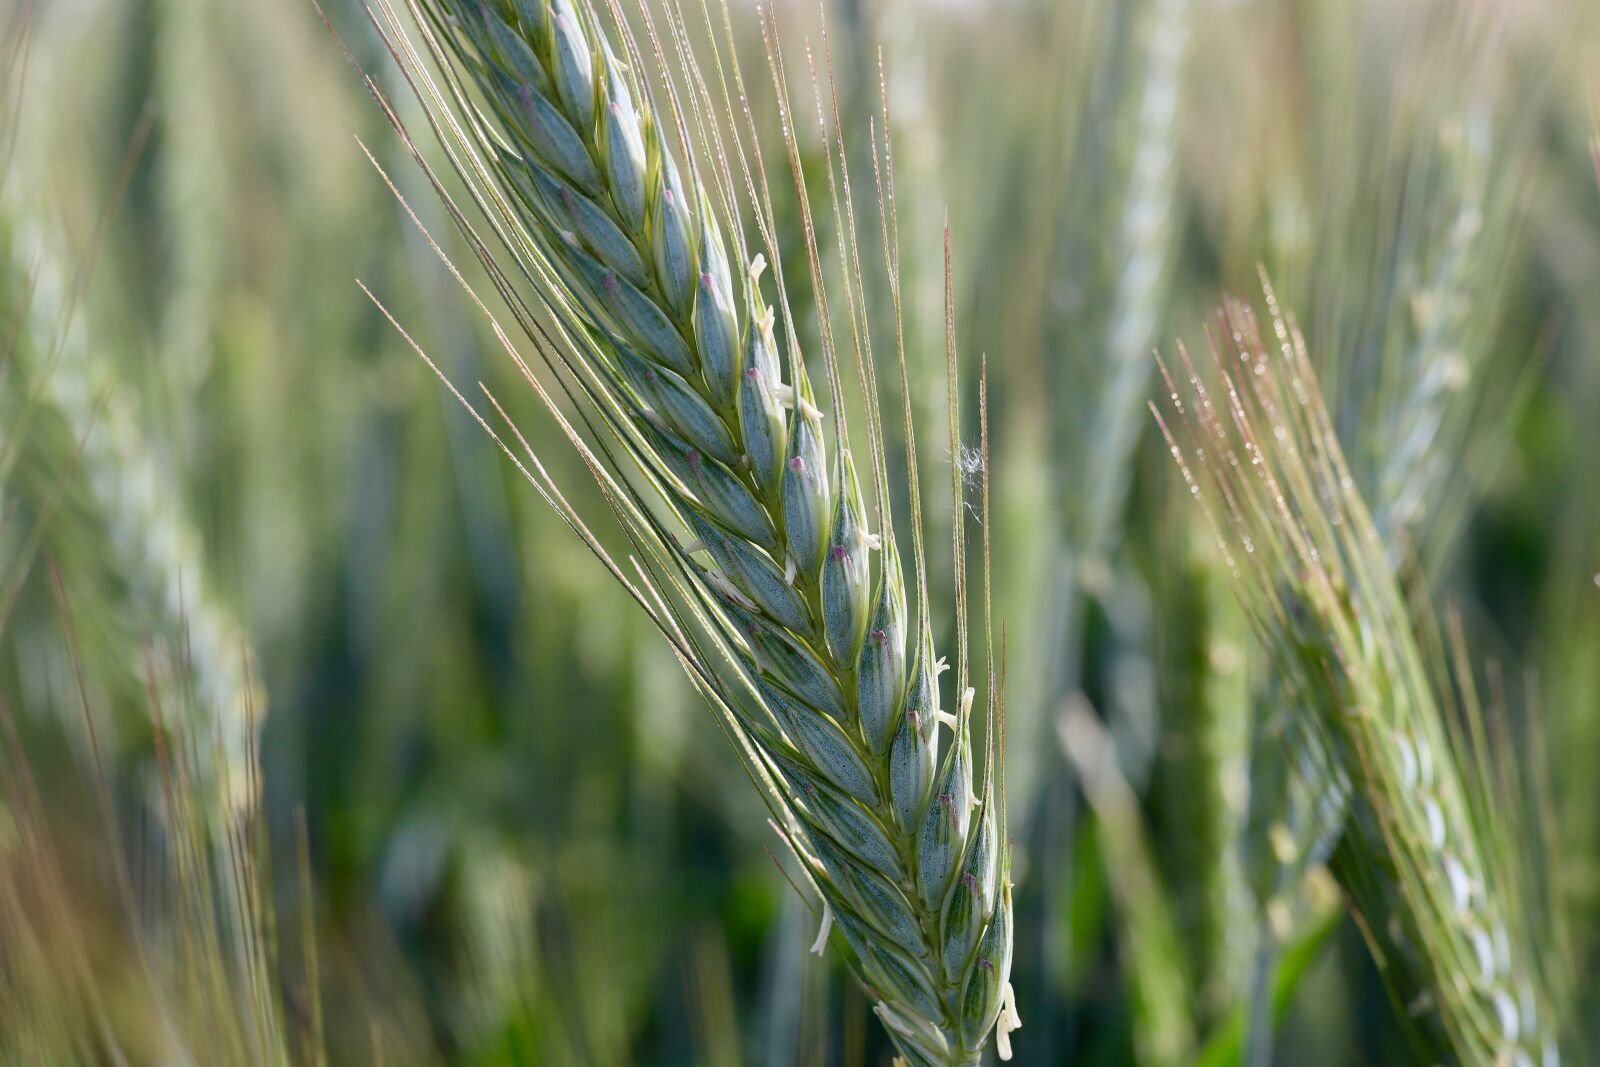 Canon EOS M50 (EOS Kiss M) sample photo. Grain, ear, wheat photography